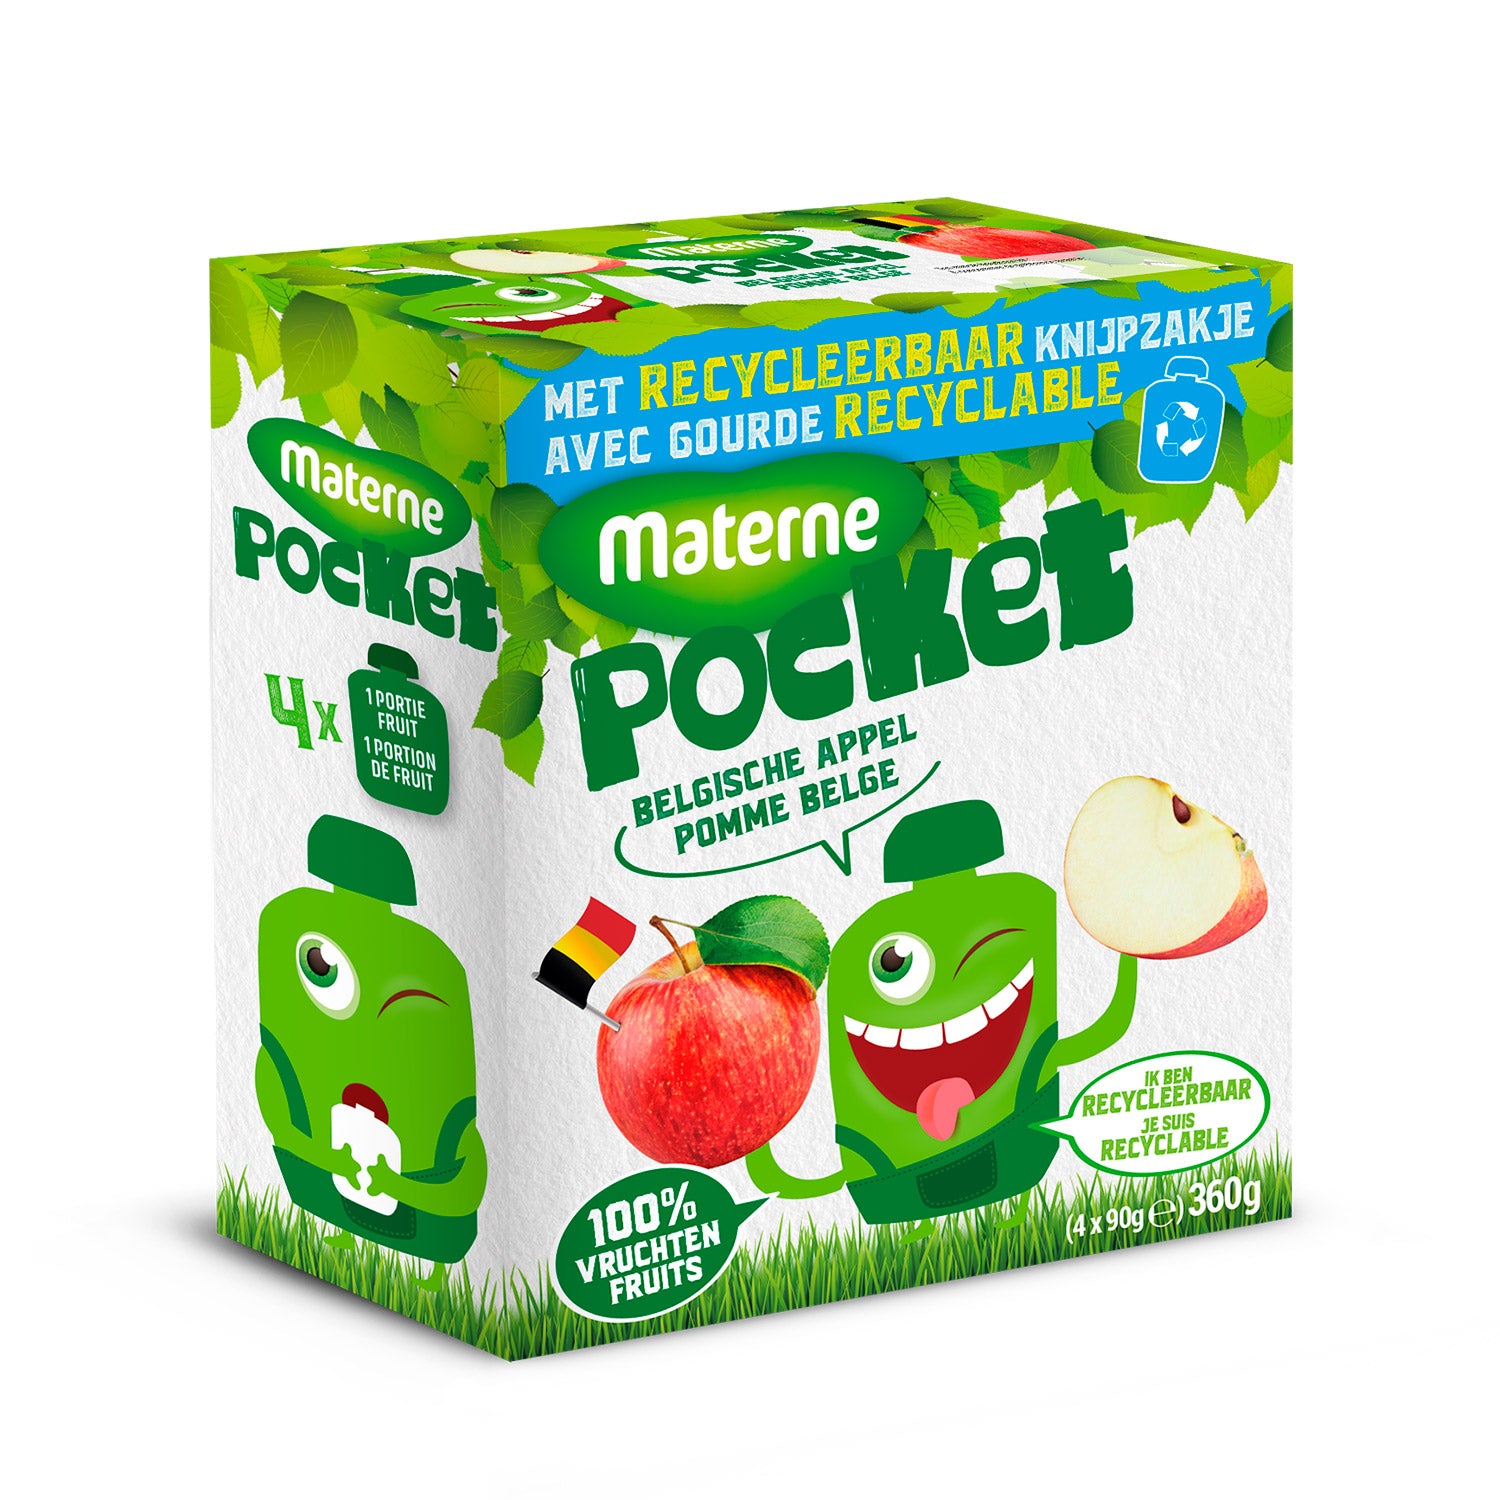 Materne Pocket<br>Belgische appel